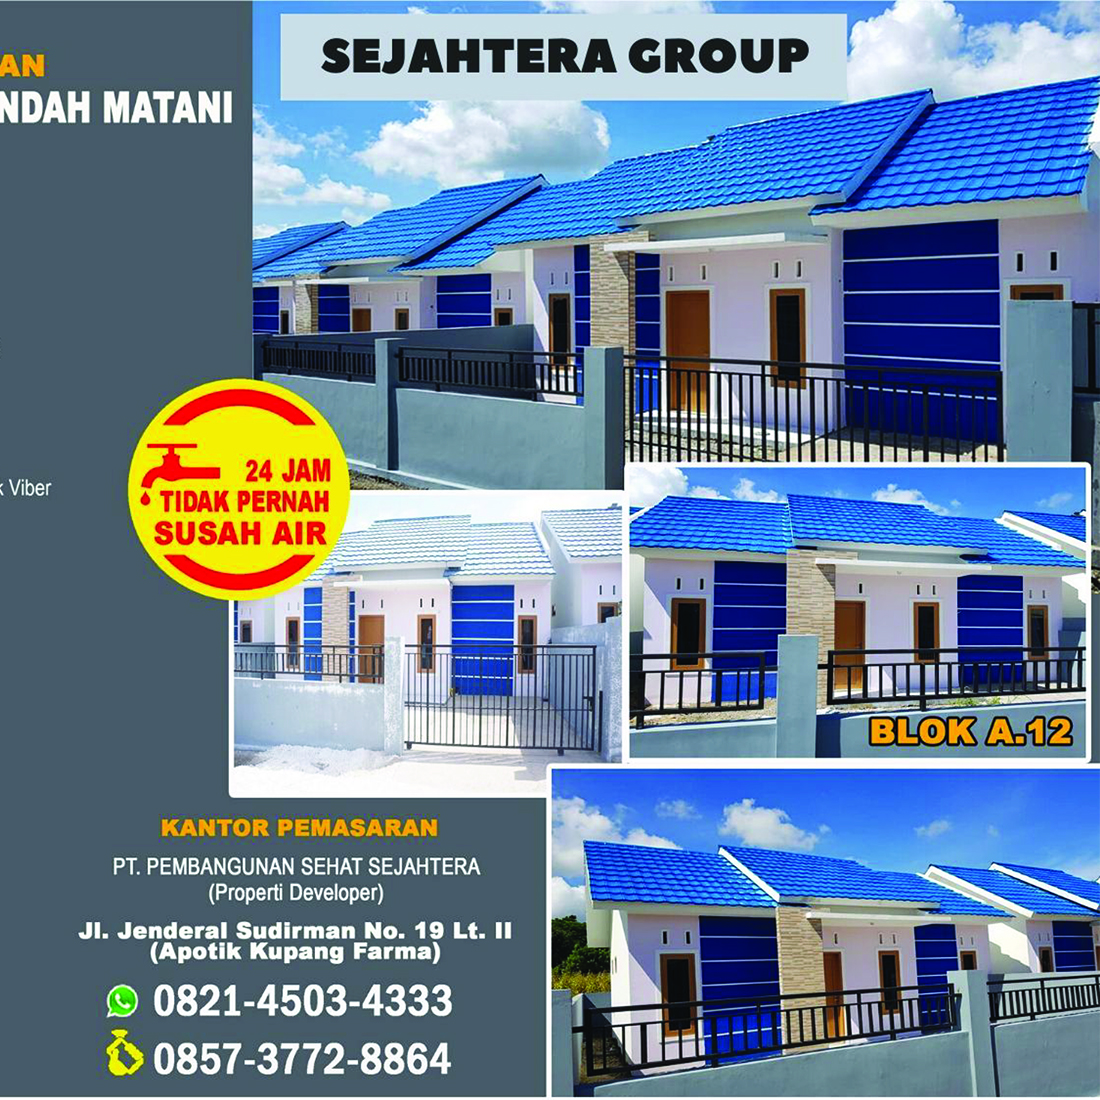 myKupang Pondok Indah Matani estate broshure section two